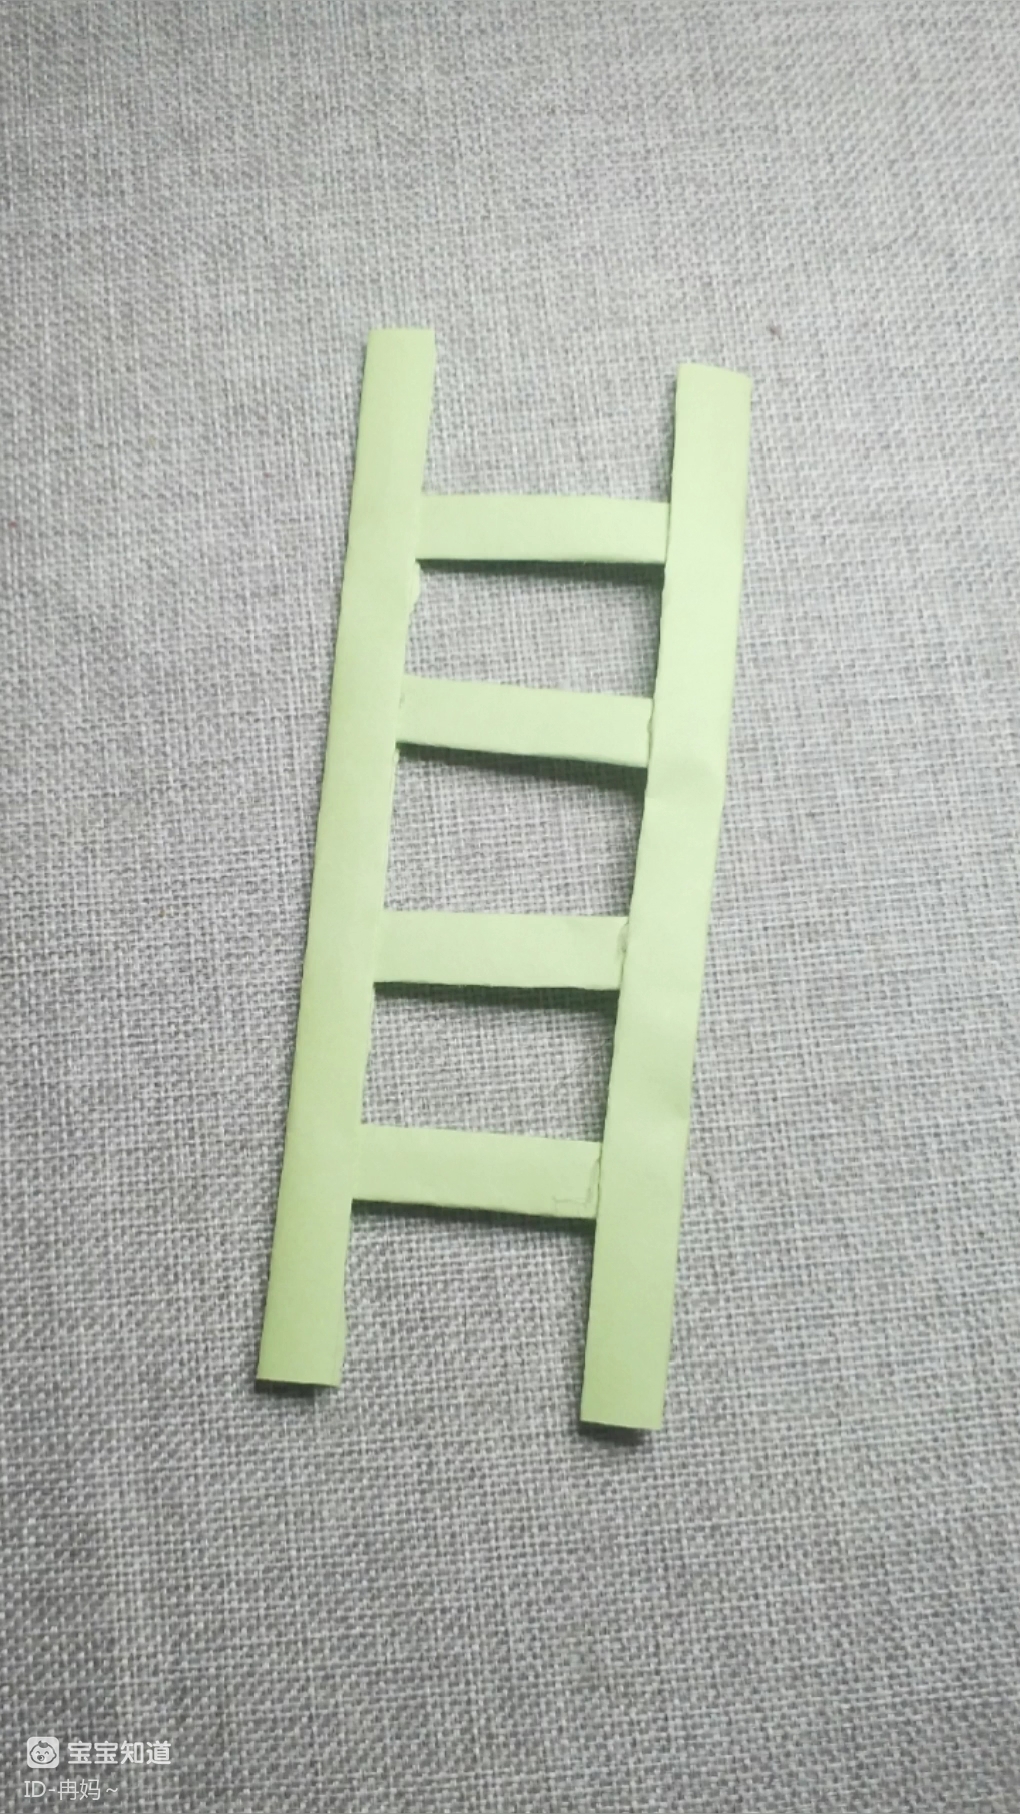 自制折叠梯子图片